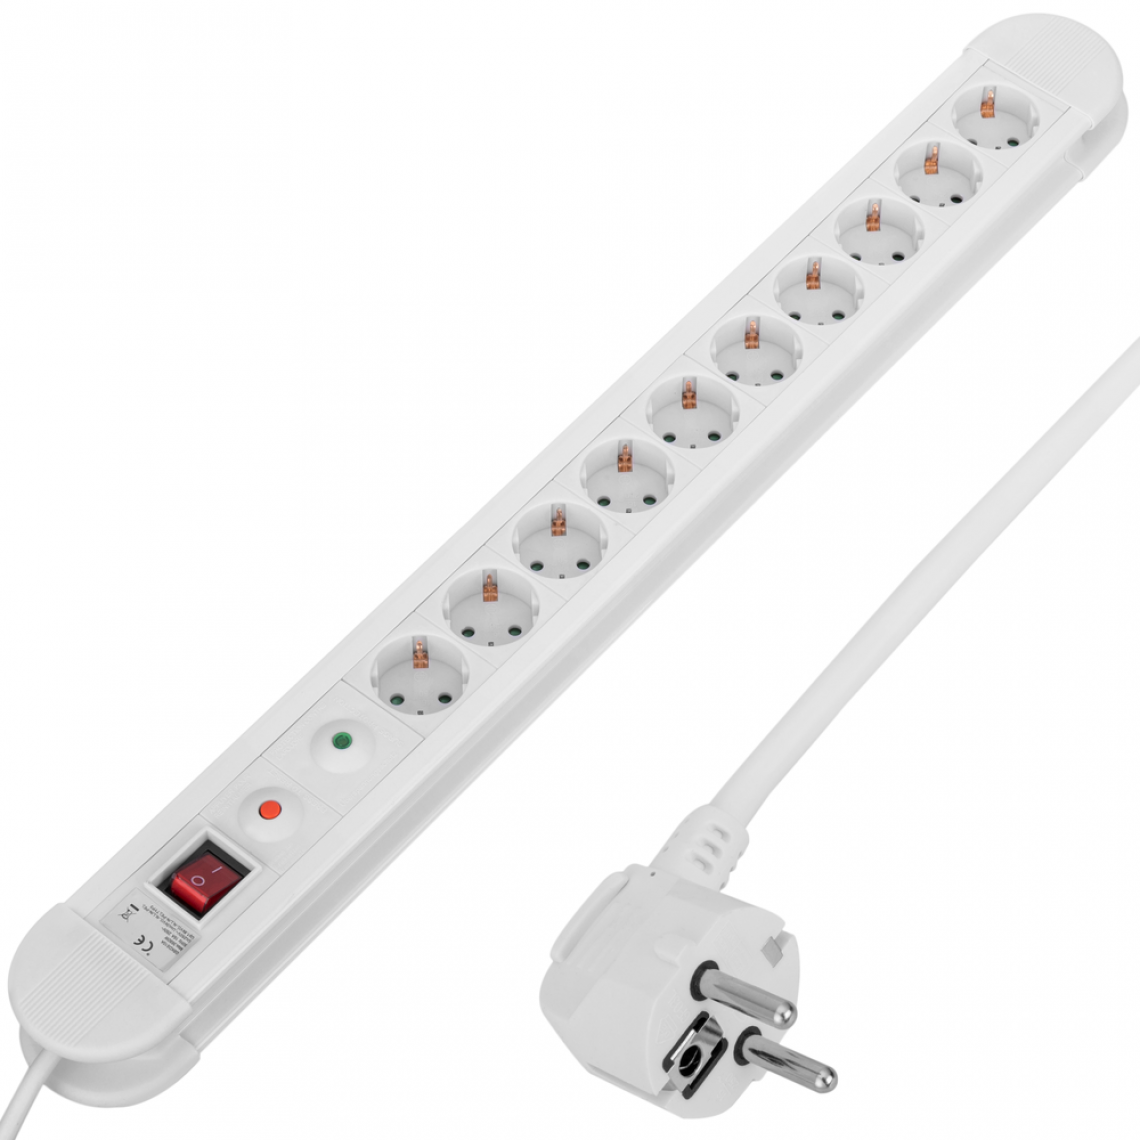 Bematik - Multiprise 10 prises avec interrupteur et parafoudre blanc (1.5m câble) - Blocs multiprises